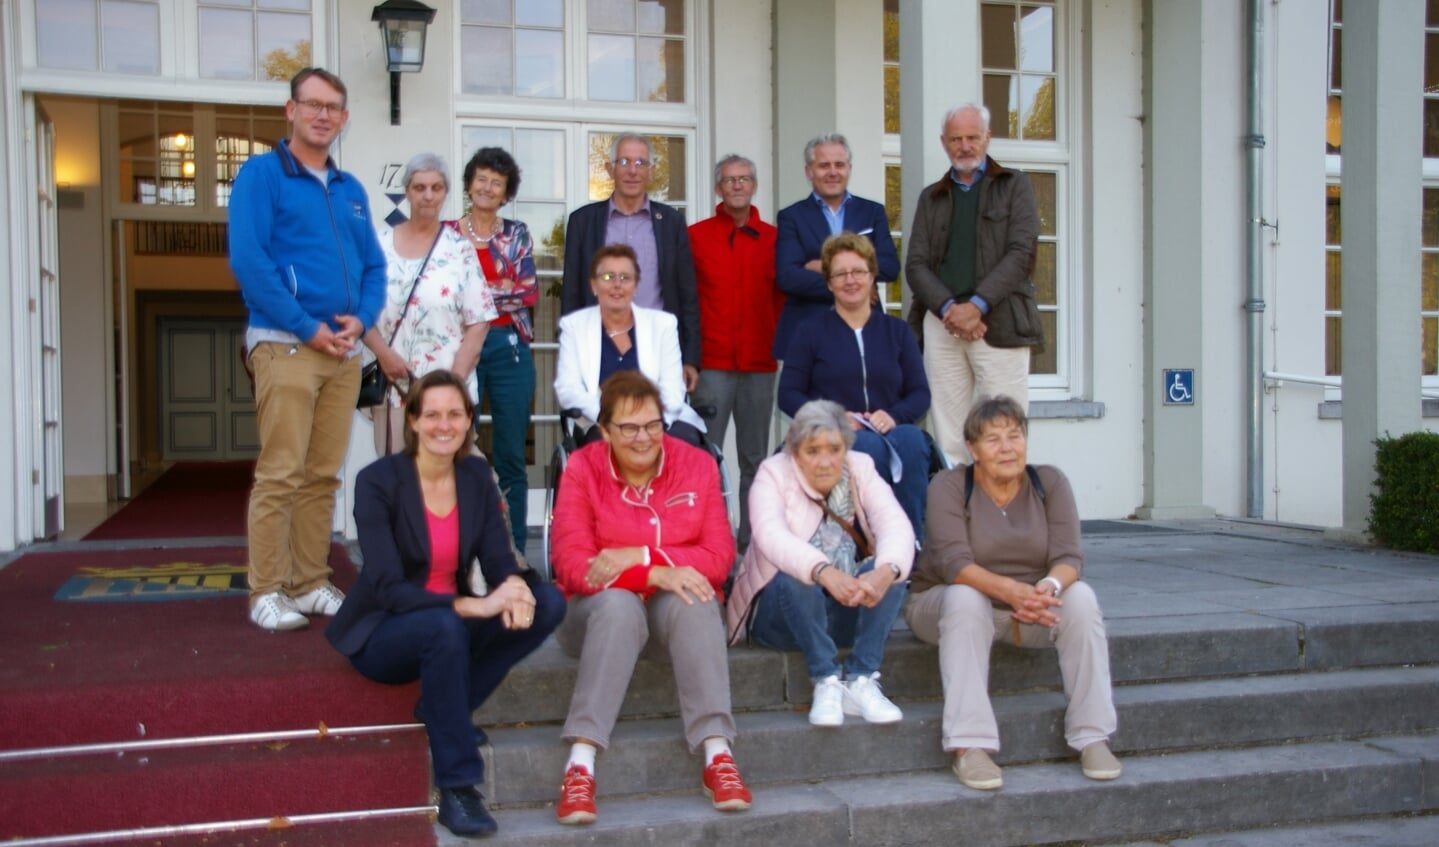 De middaggroep deelnemers met de werkgroepen Toegankelijkheid, onderdeel van de Adviesraad Sociaal Domein De Bilt.